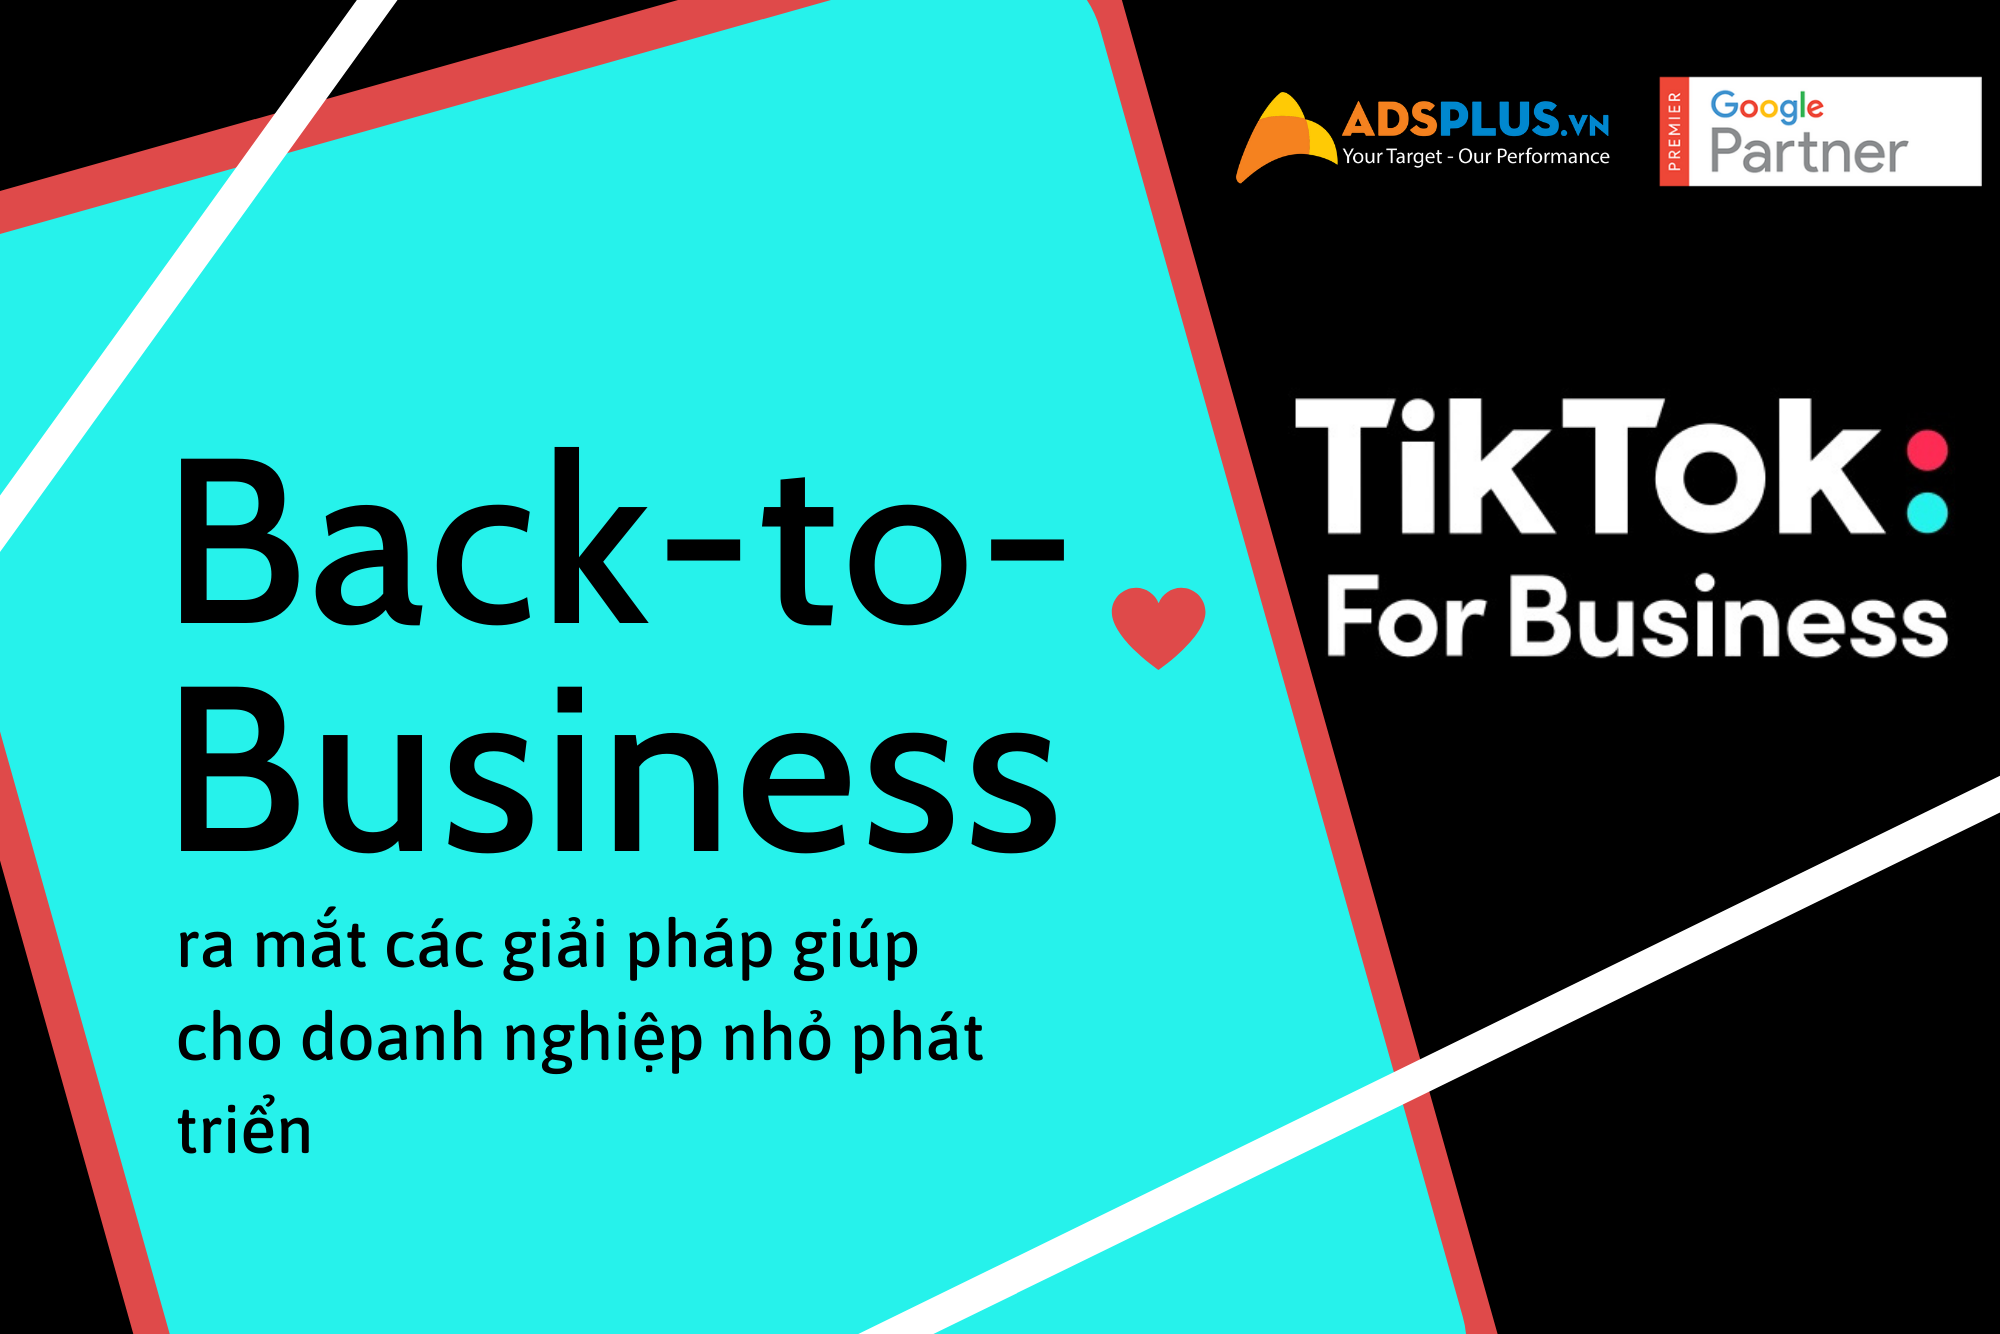 TikTok For Business ra mắt các giải pháp giúp cho doanh nghiệp nhỏ phát triển với TikTok